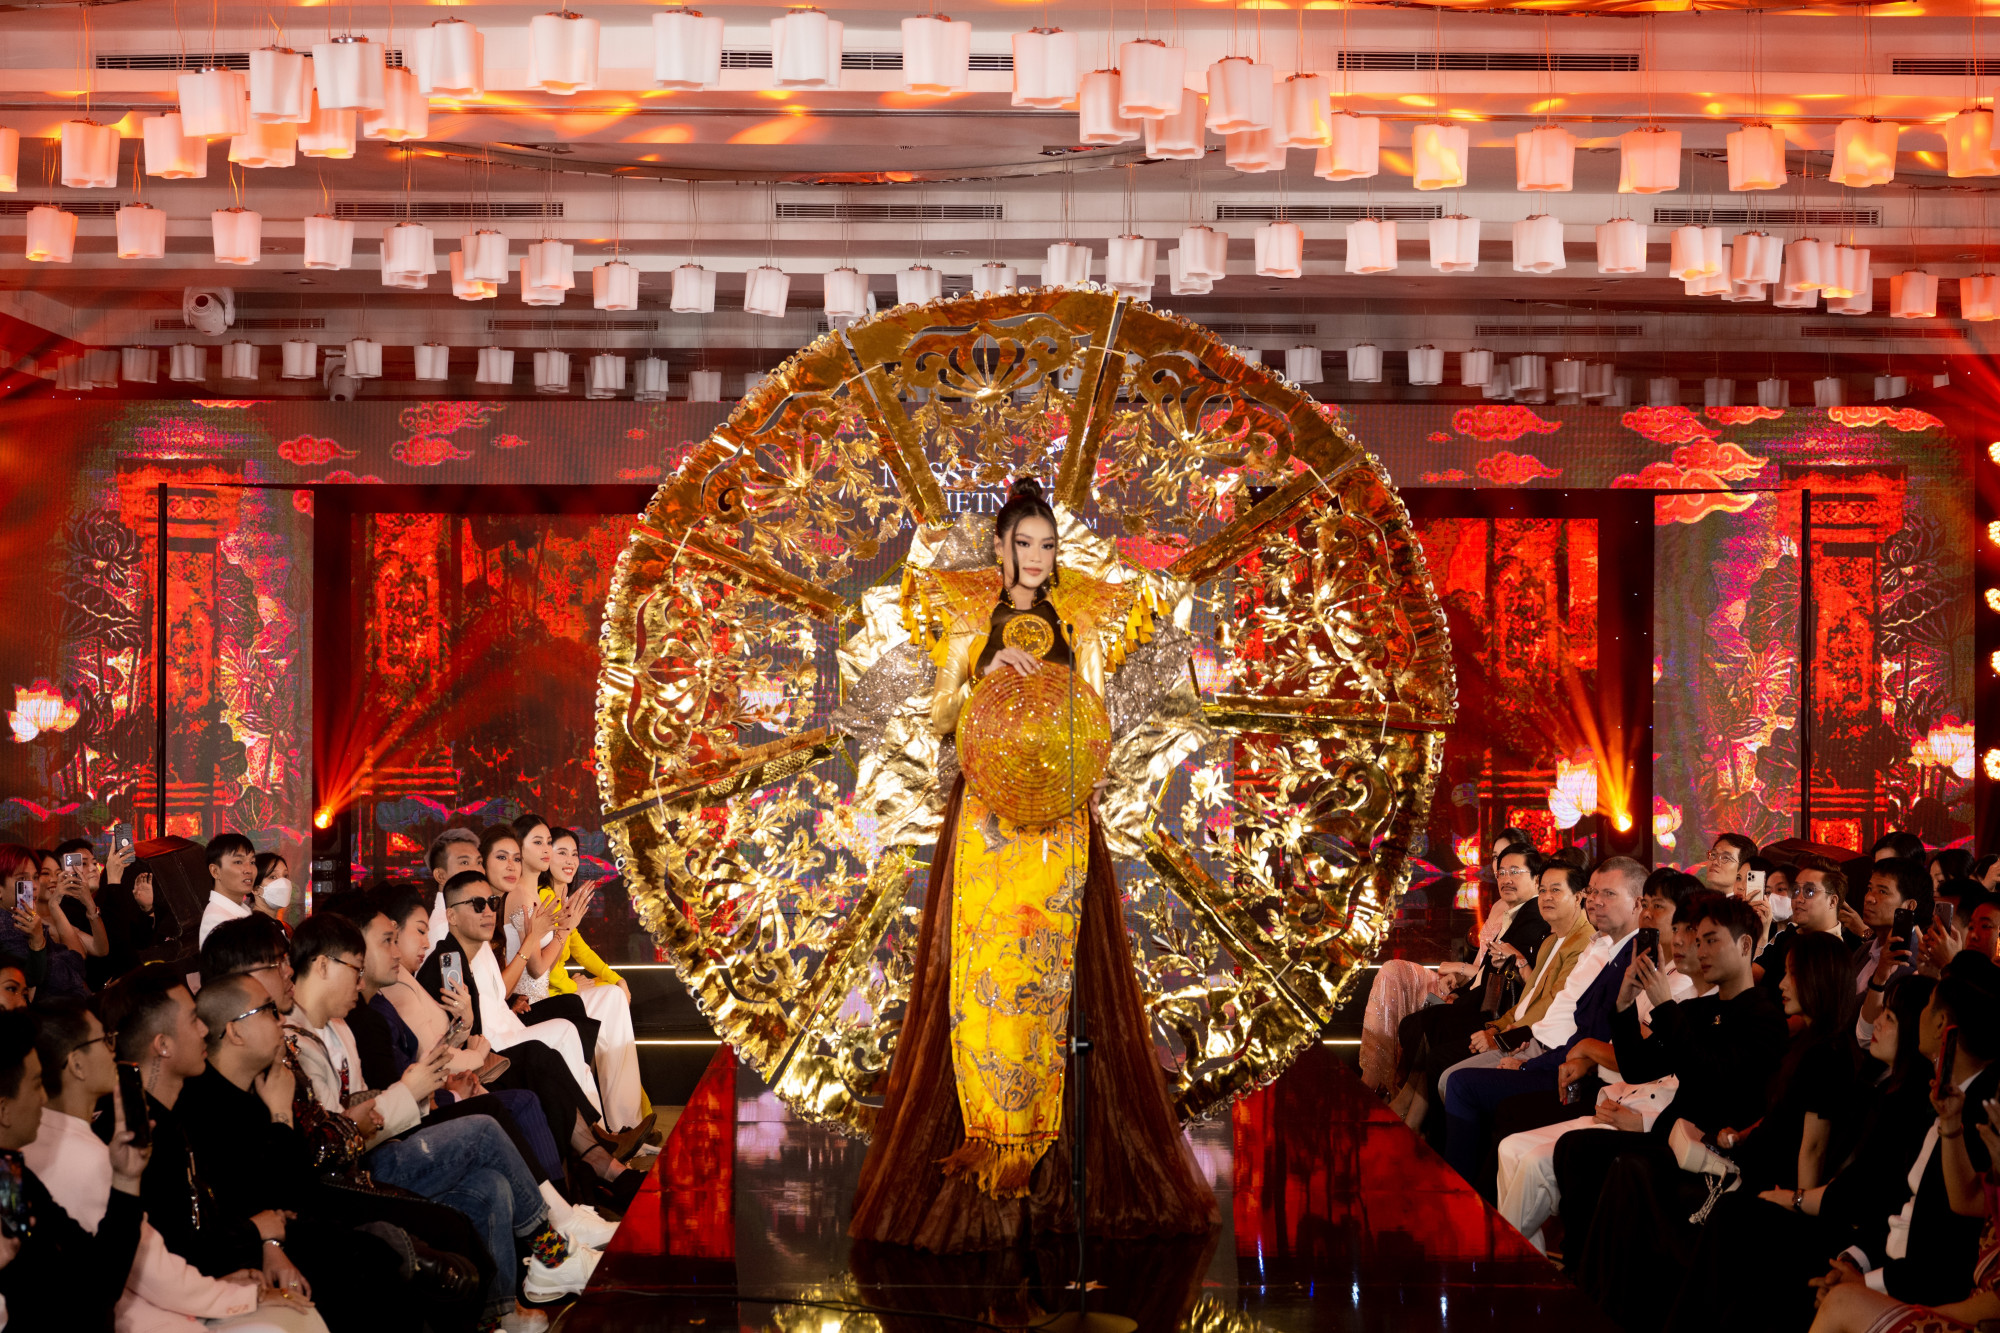 Hoa hậu Thiên Ân trình diễn thiết kế Trúc chỉ, giành chiến thắng trong phần thi thiết kế trang phục văn hoá dân tộc trong khuôn khổ Hoa hậu Hoà bình Việt Nam 2022